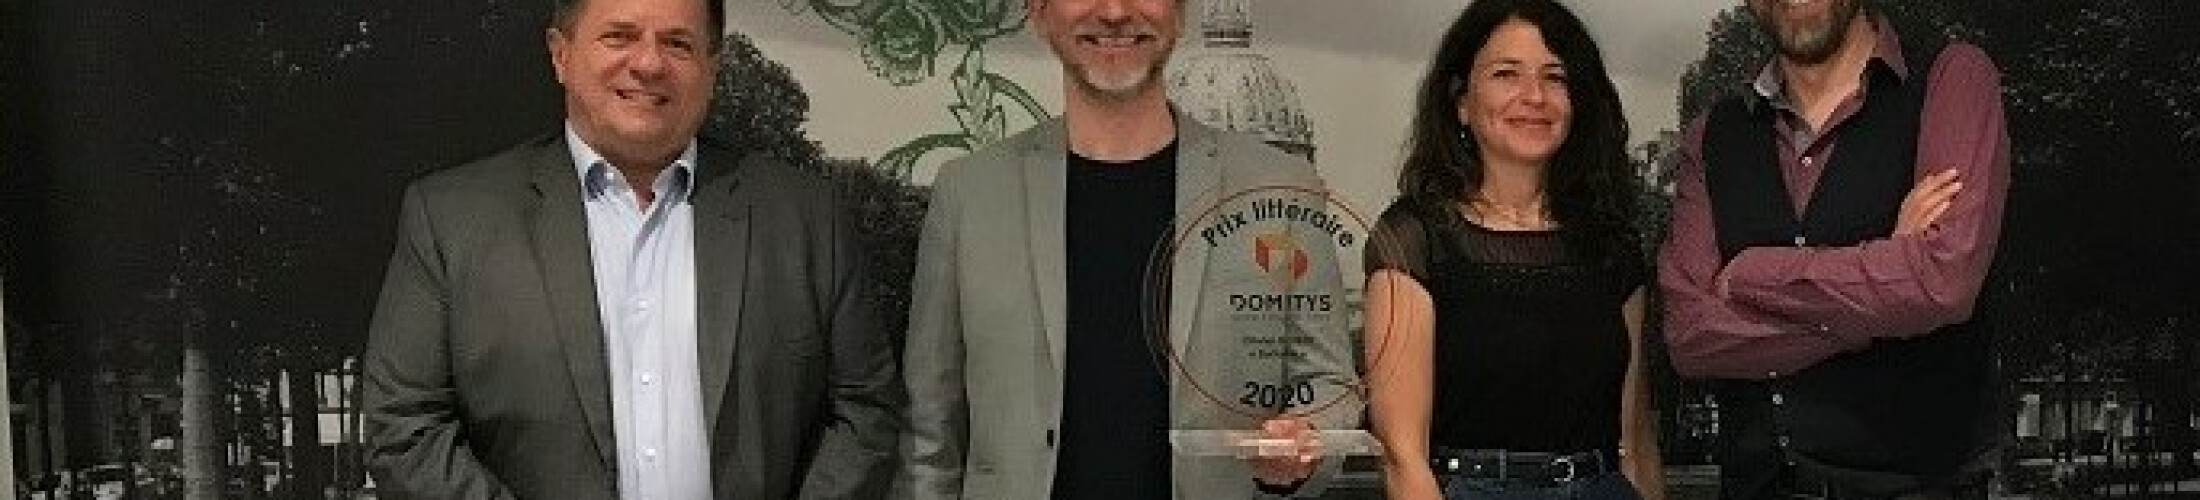 Remise Prix Littéraire Domitys 2020